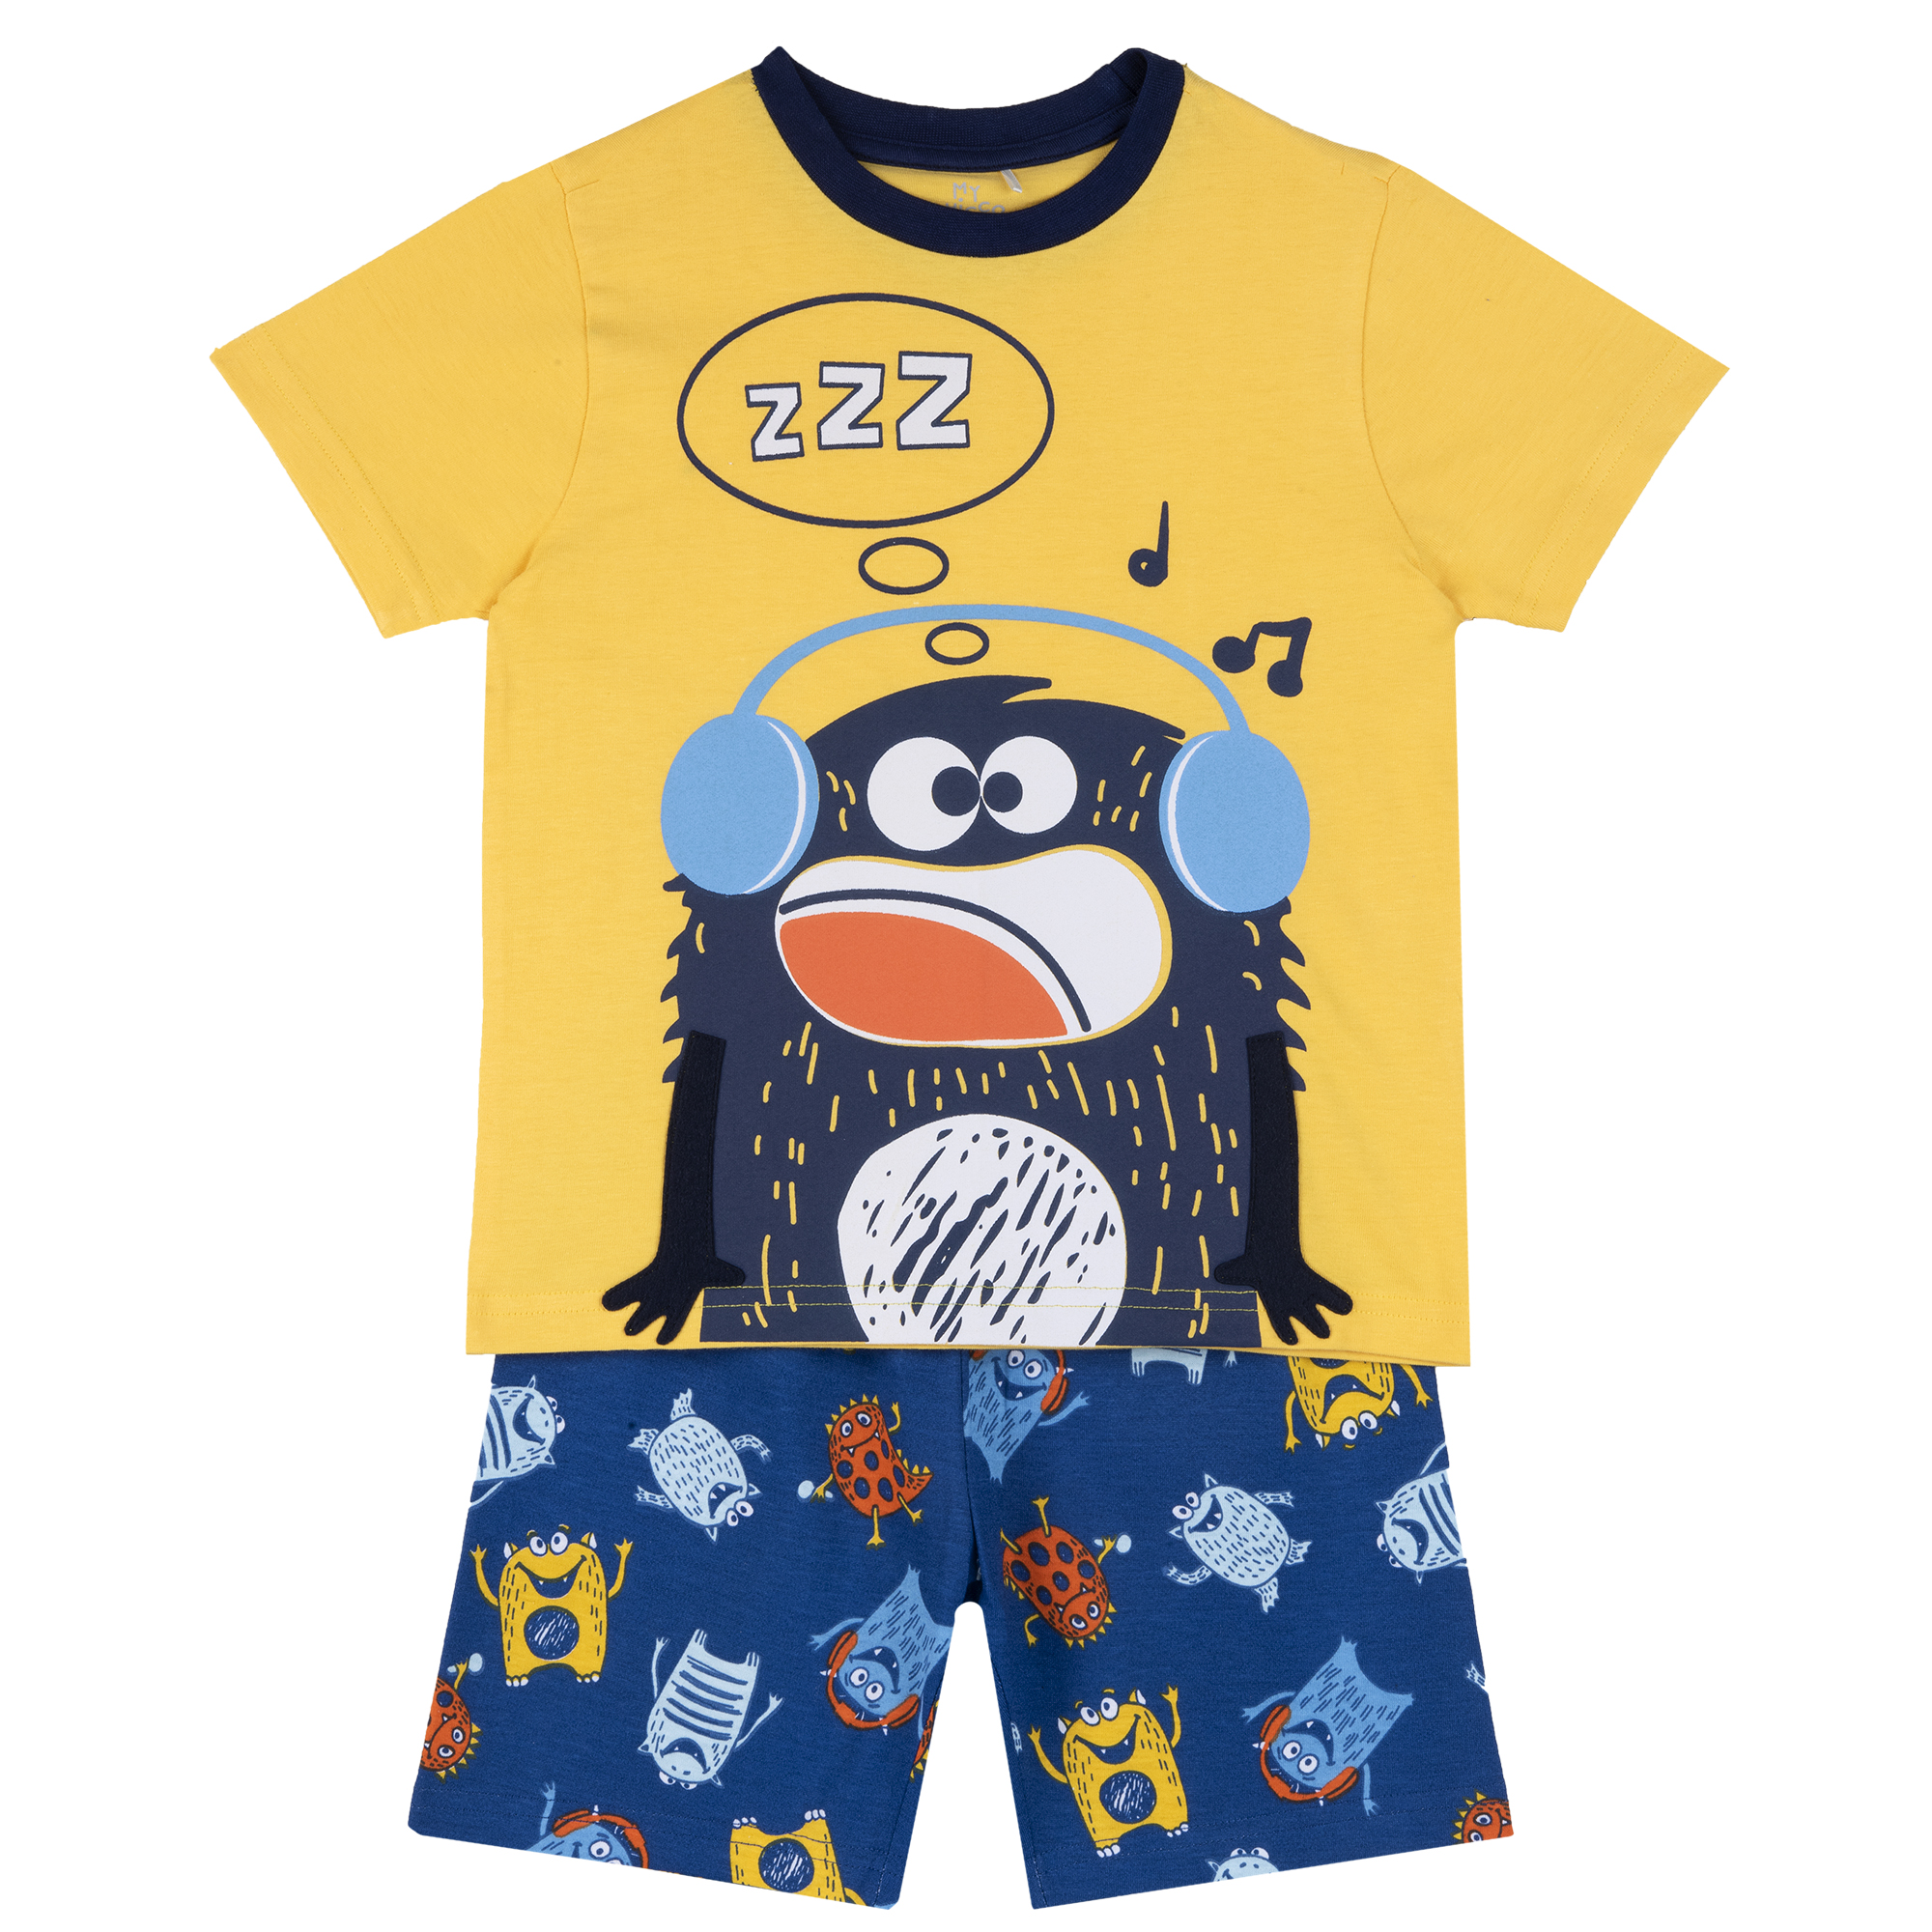 Pijama copii Chicco, albastru cu galben, 35394